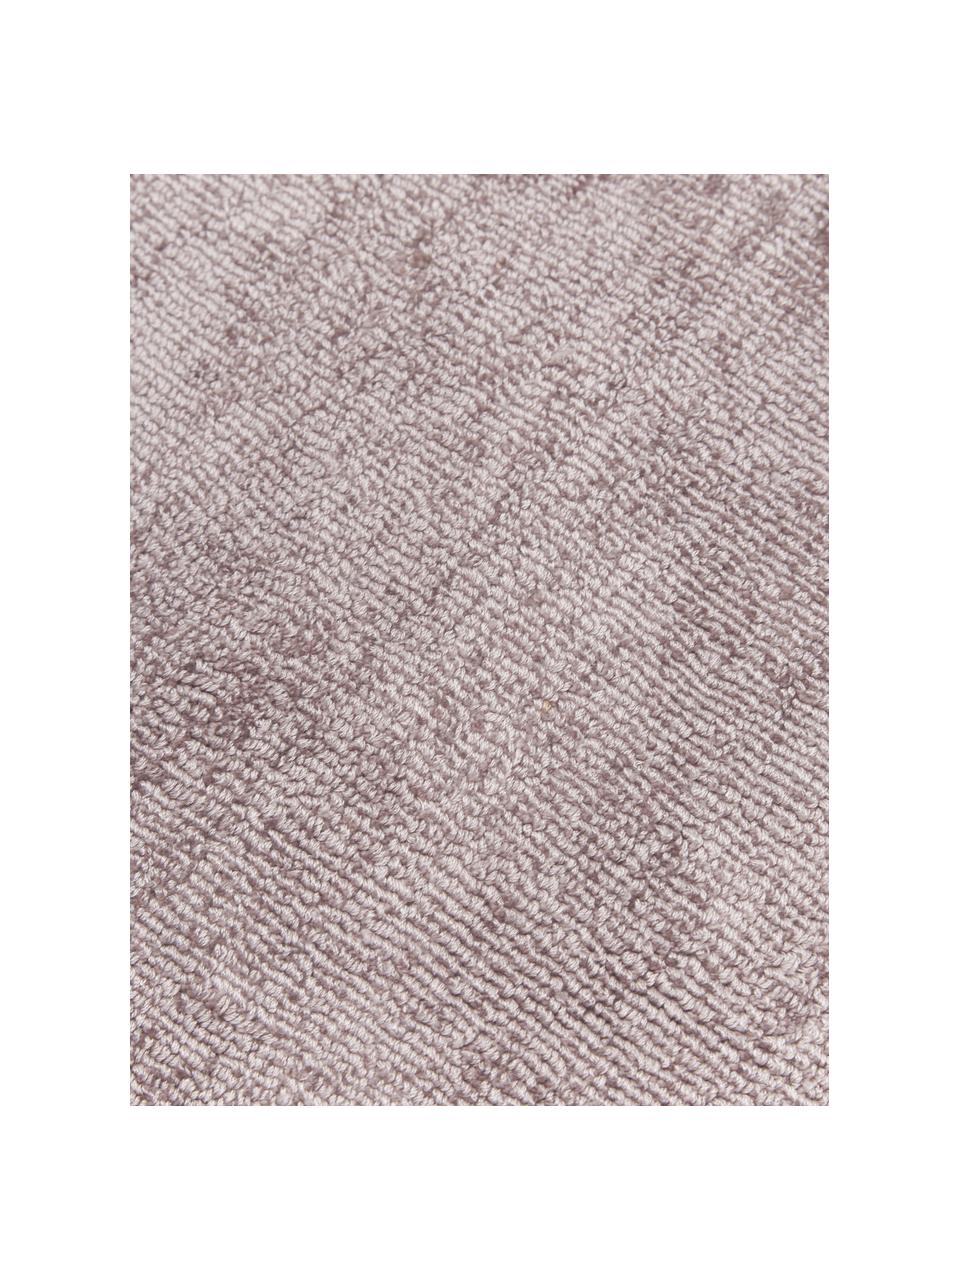 Rond viscose vloerkleed Jane in lila, handgeweven, Onderzijde: 100% katoen, Lila, Ø 115 cm (maat S)